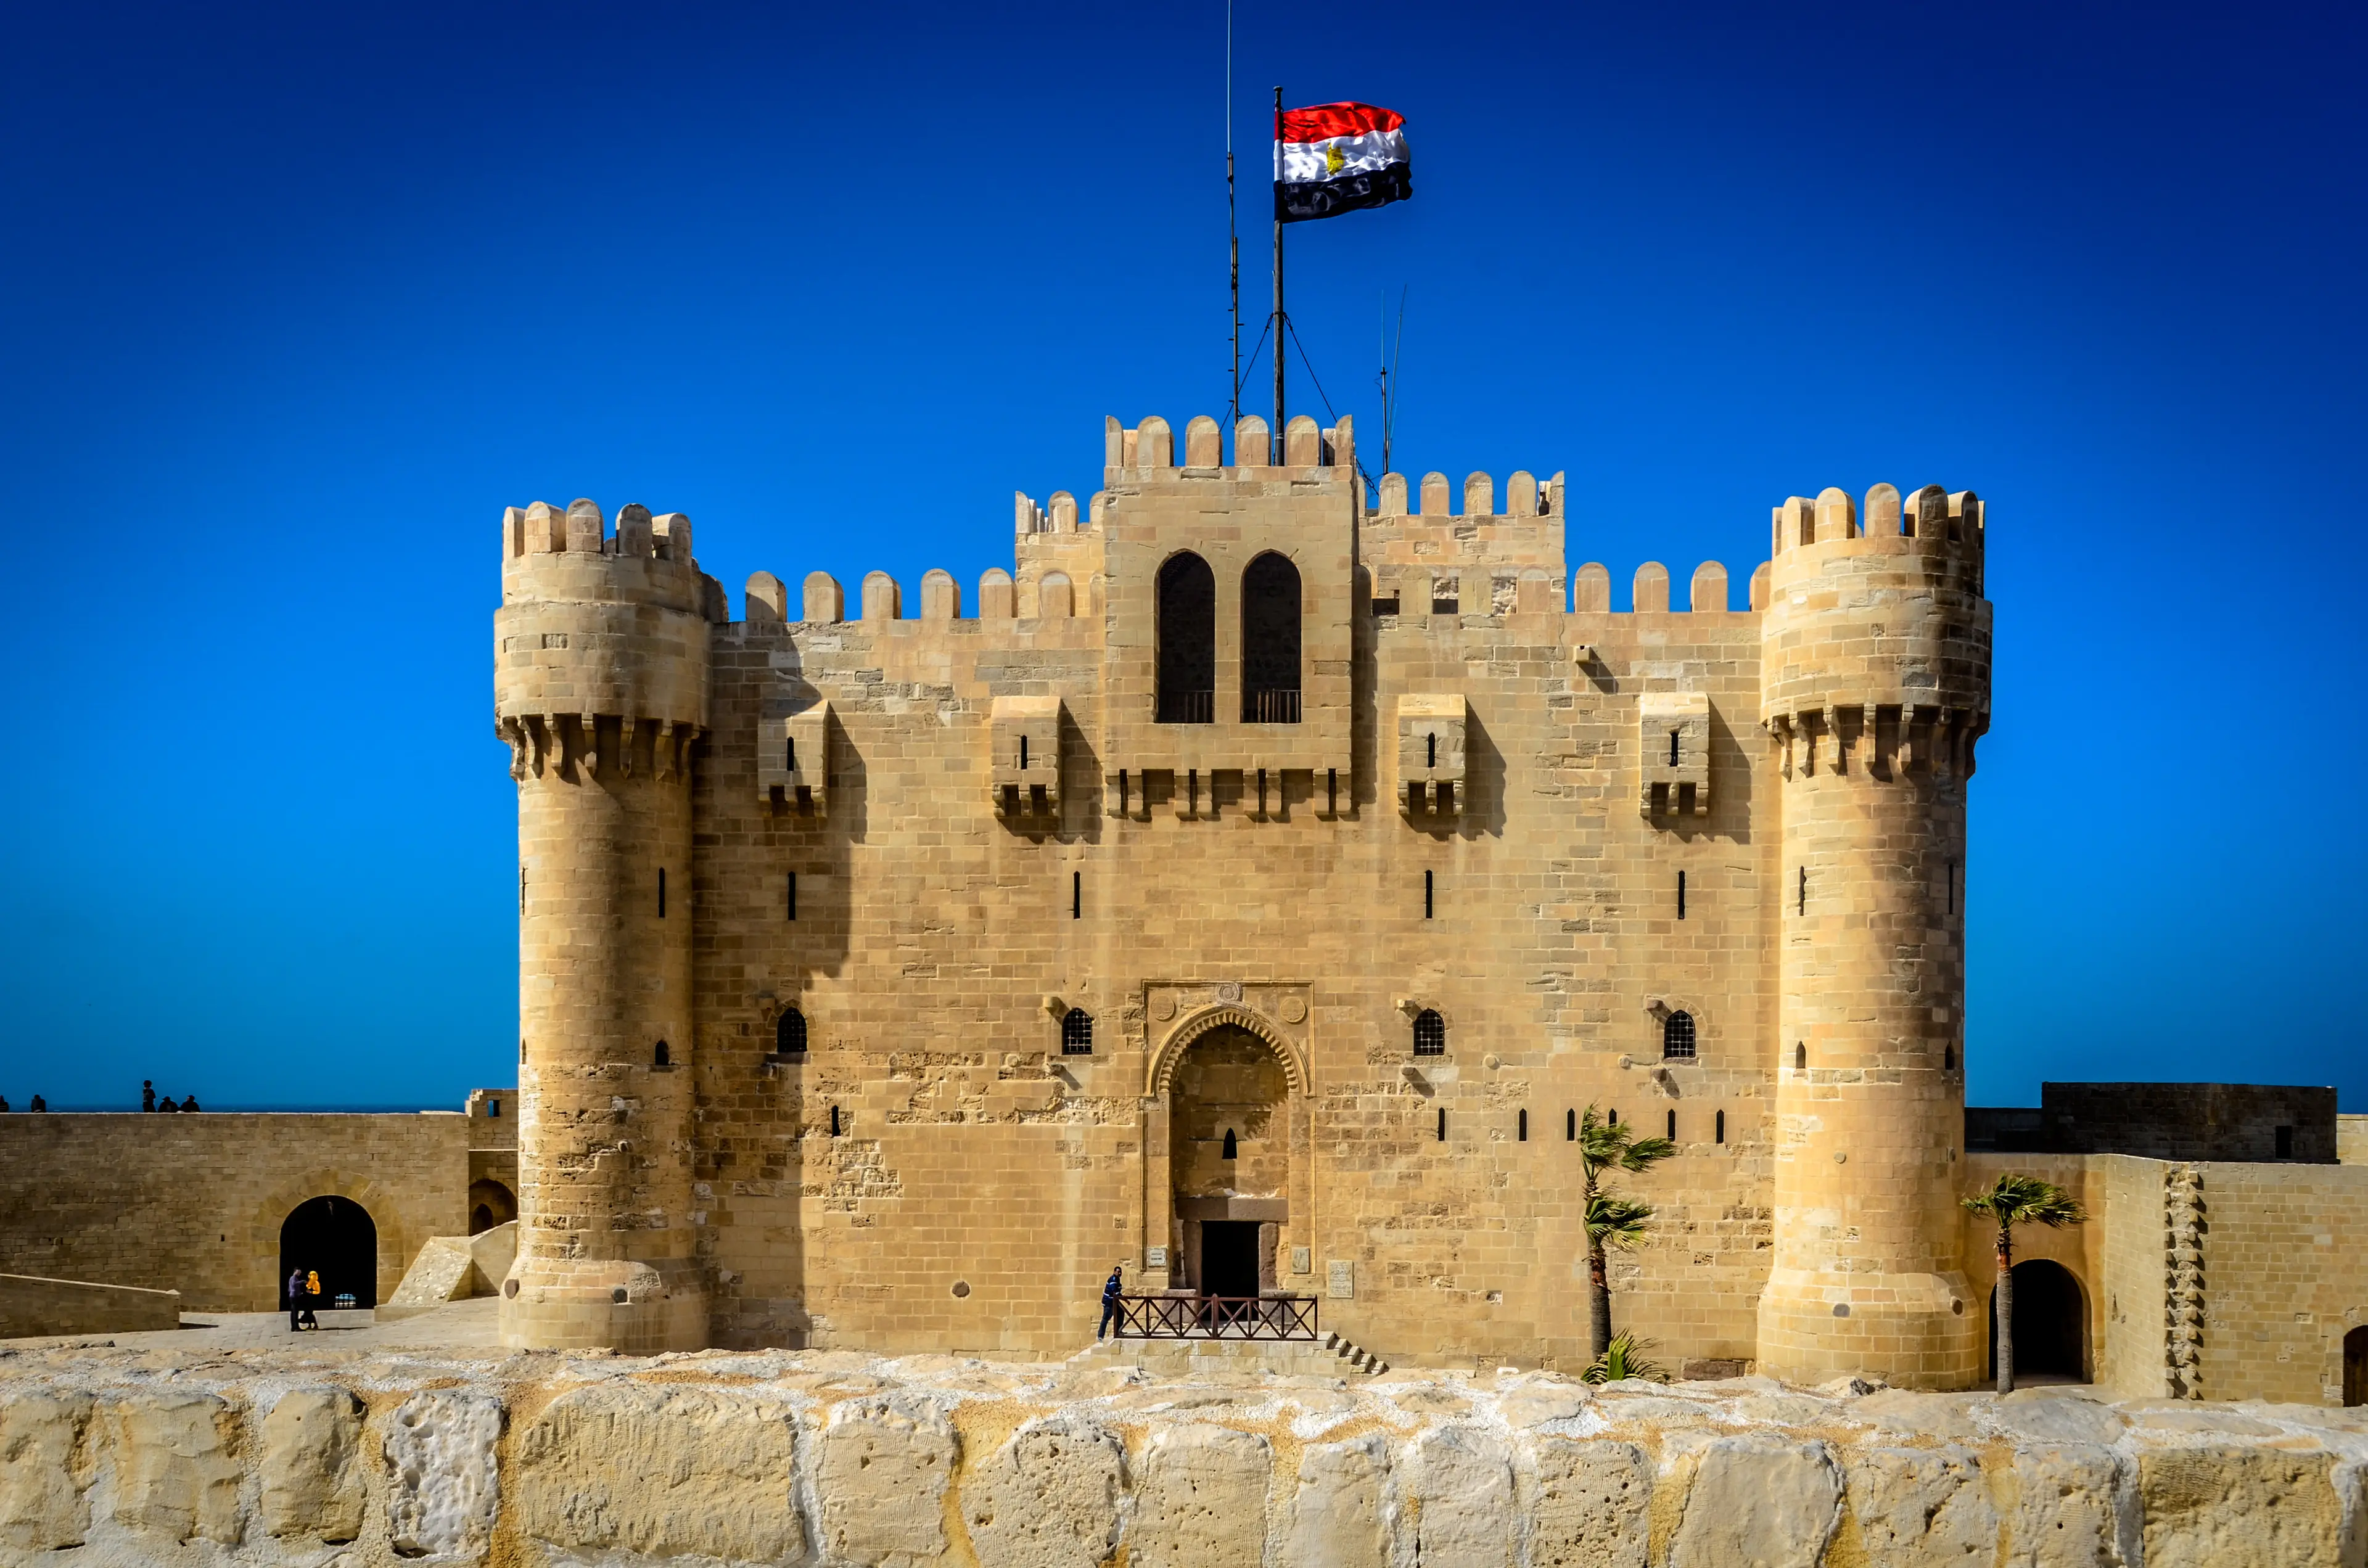 Citadel of the Qaitbay